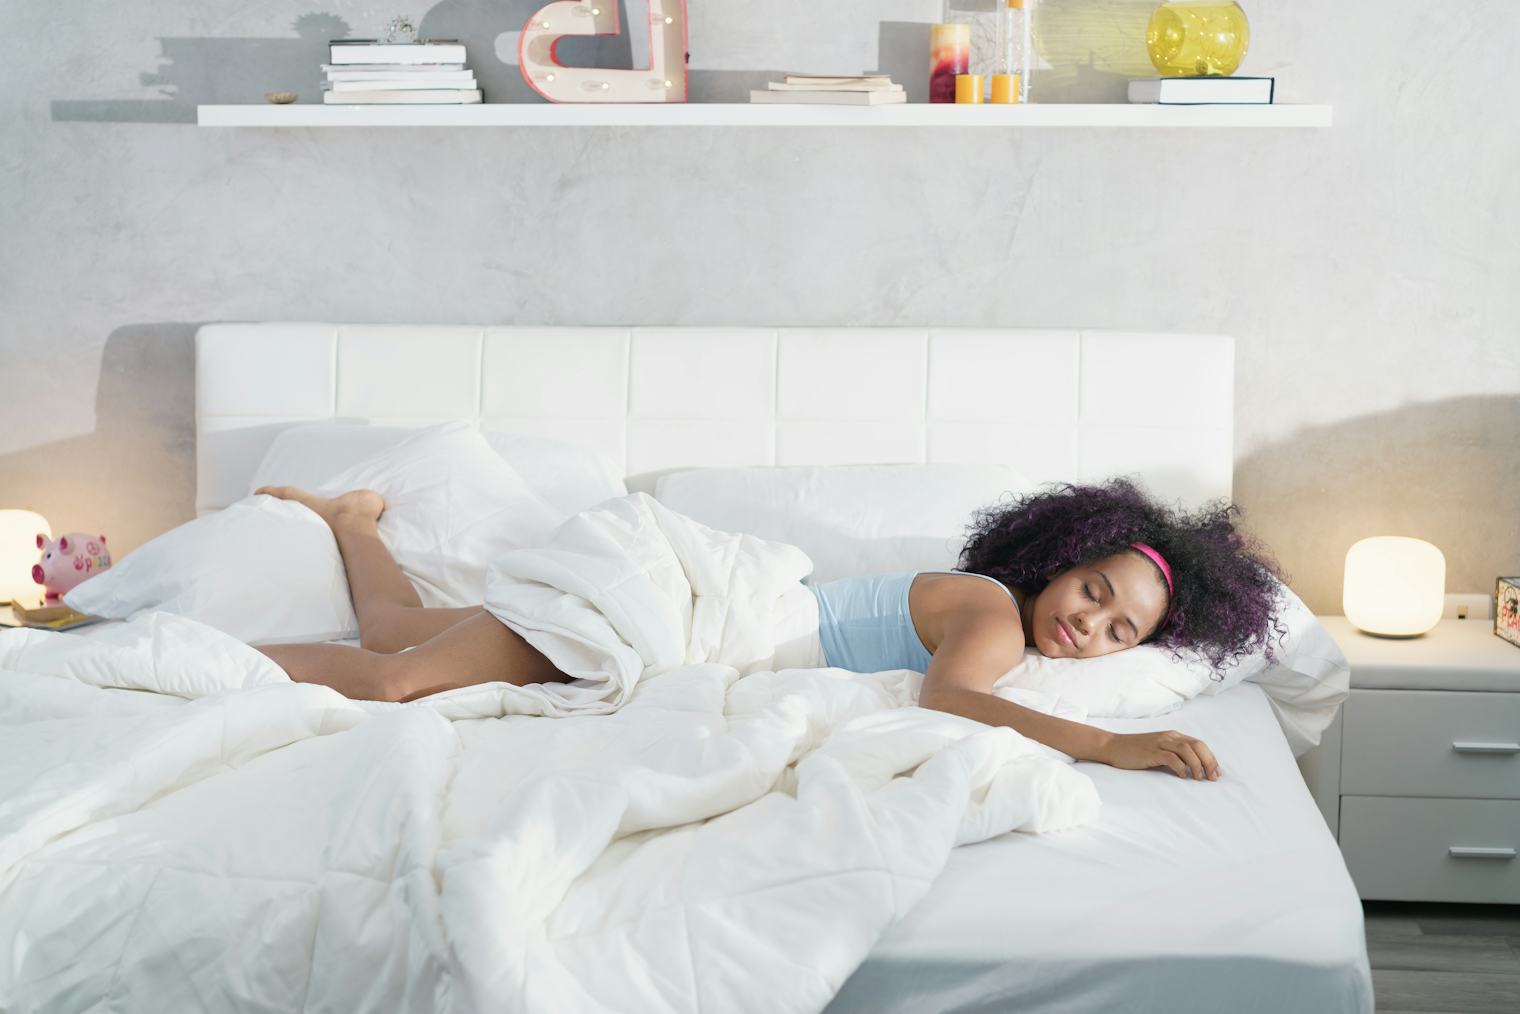 does mattress affect sleep